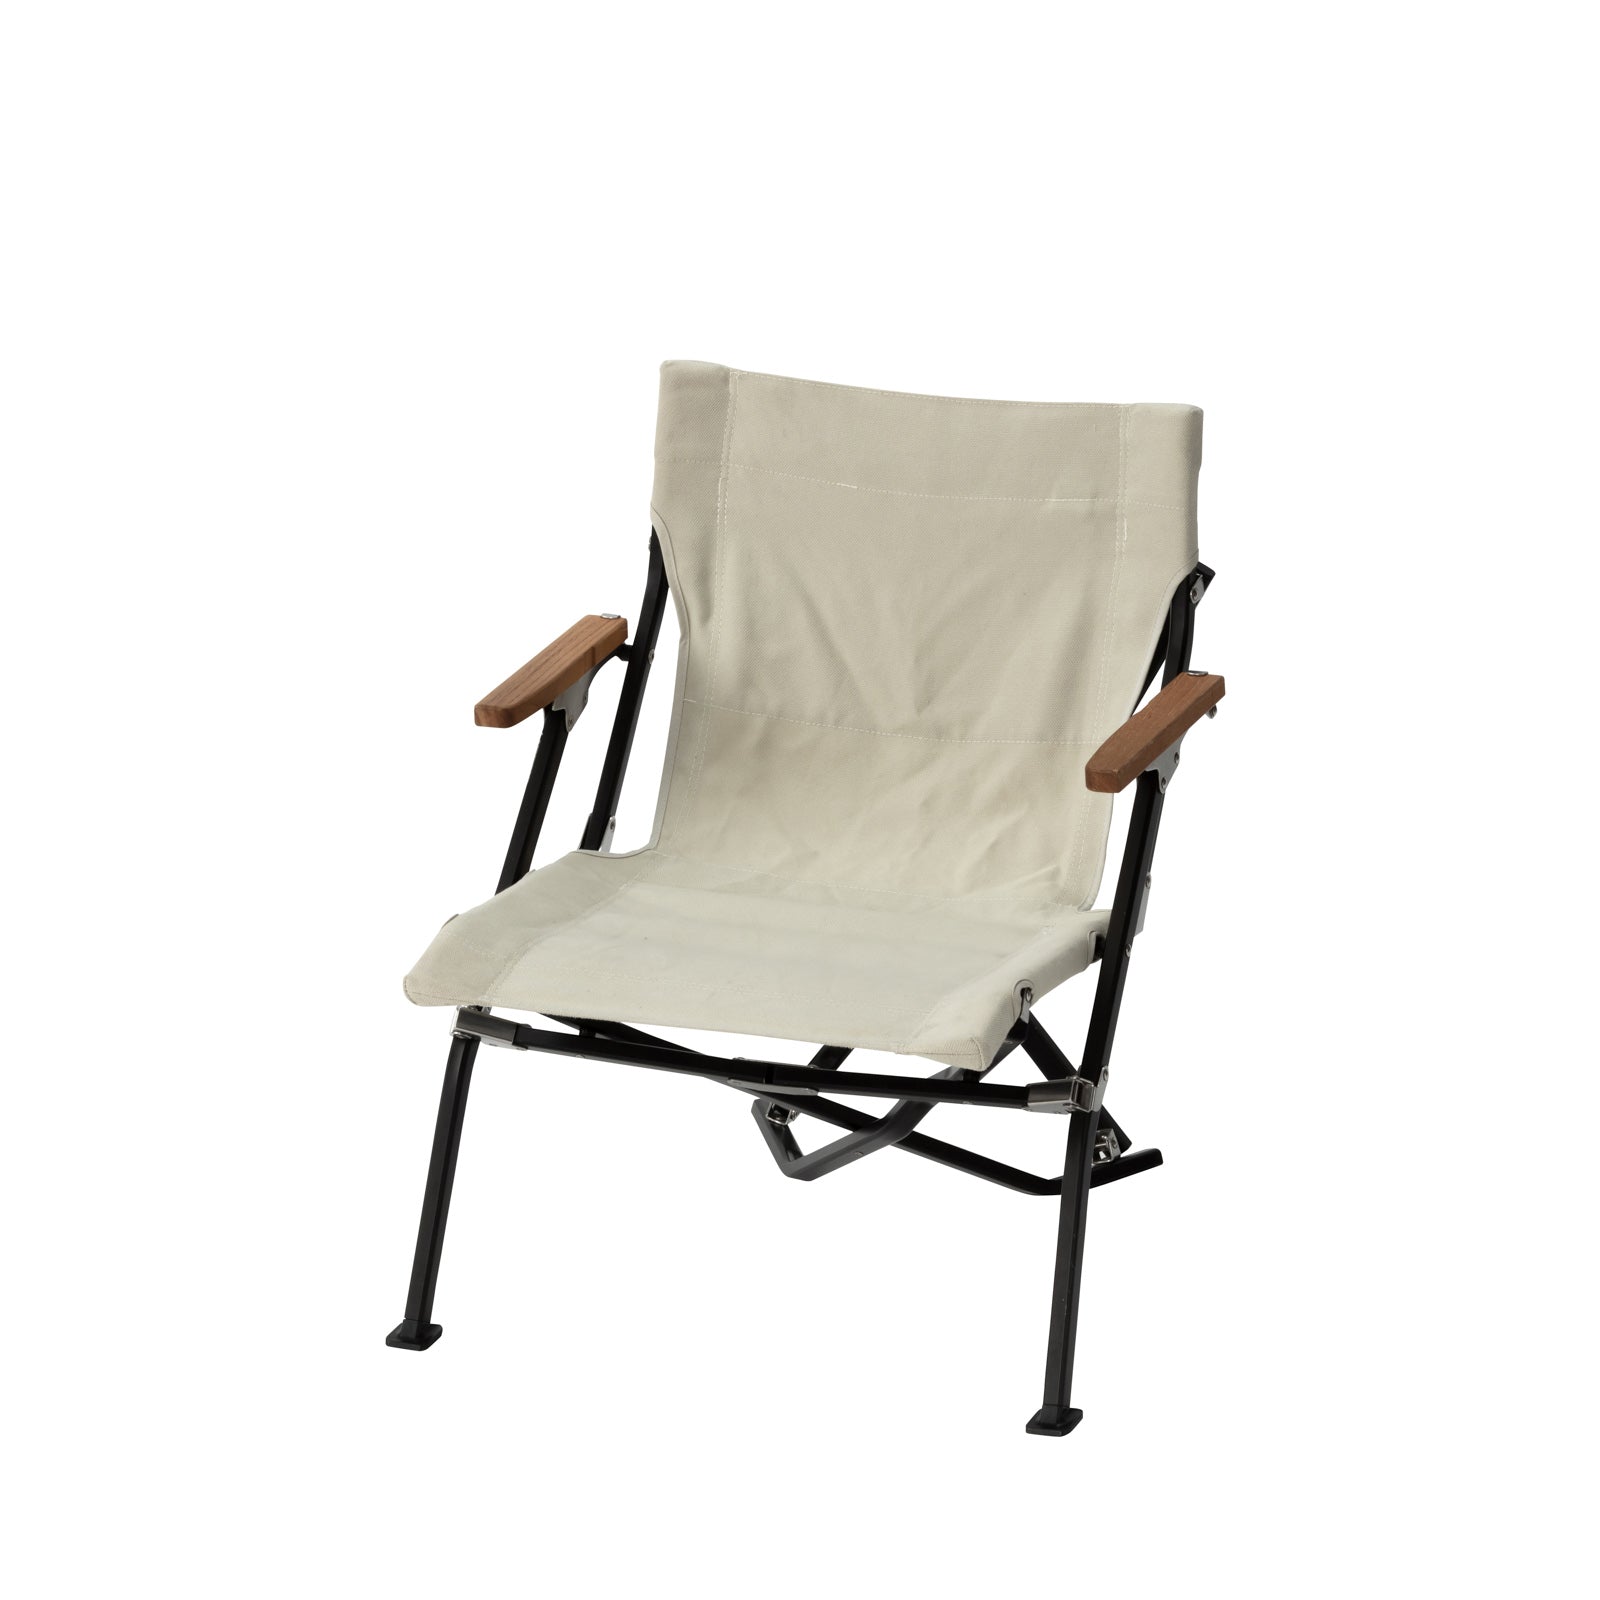 Snow Peak - Low Luxury Beach Chair